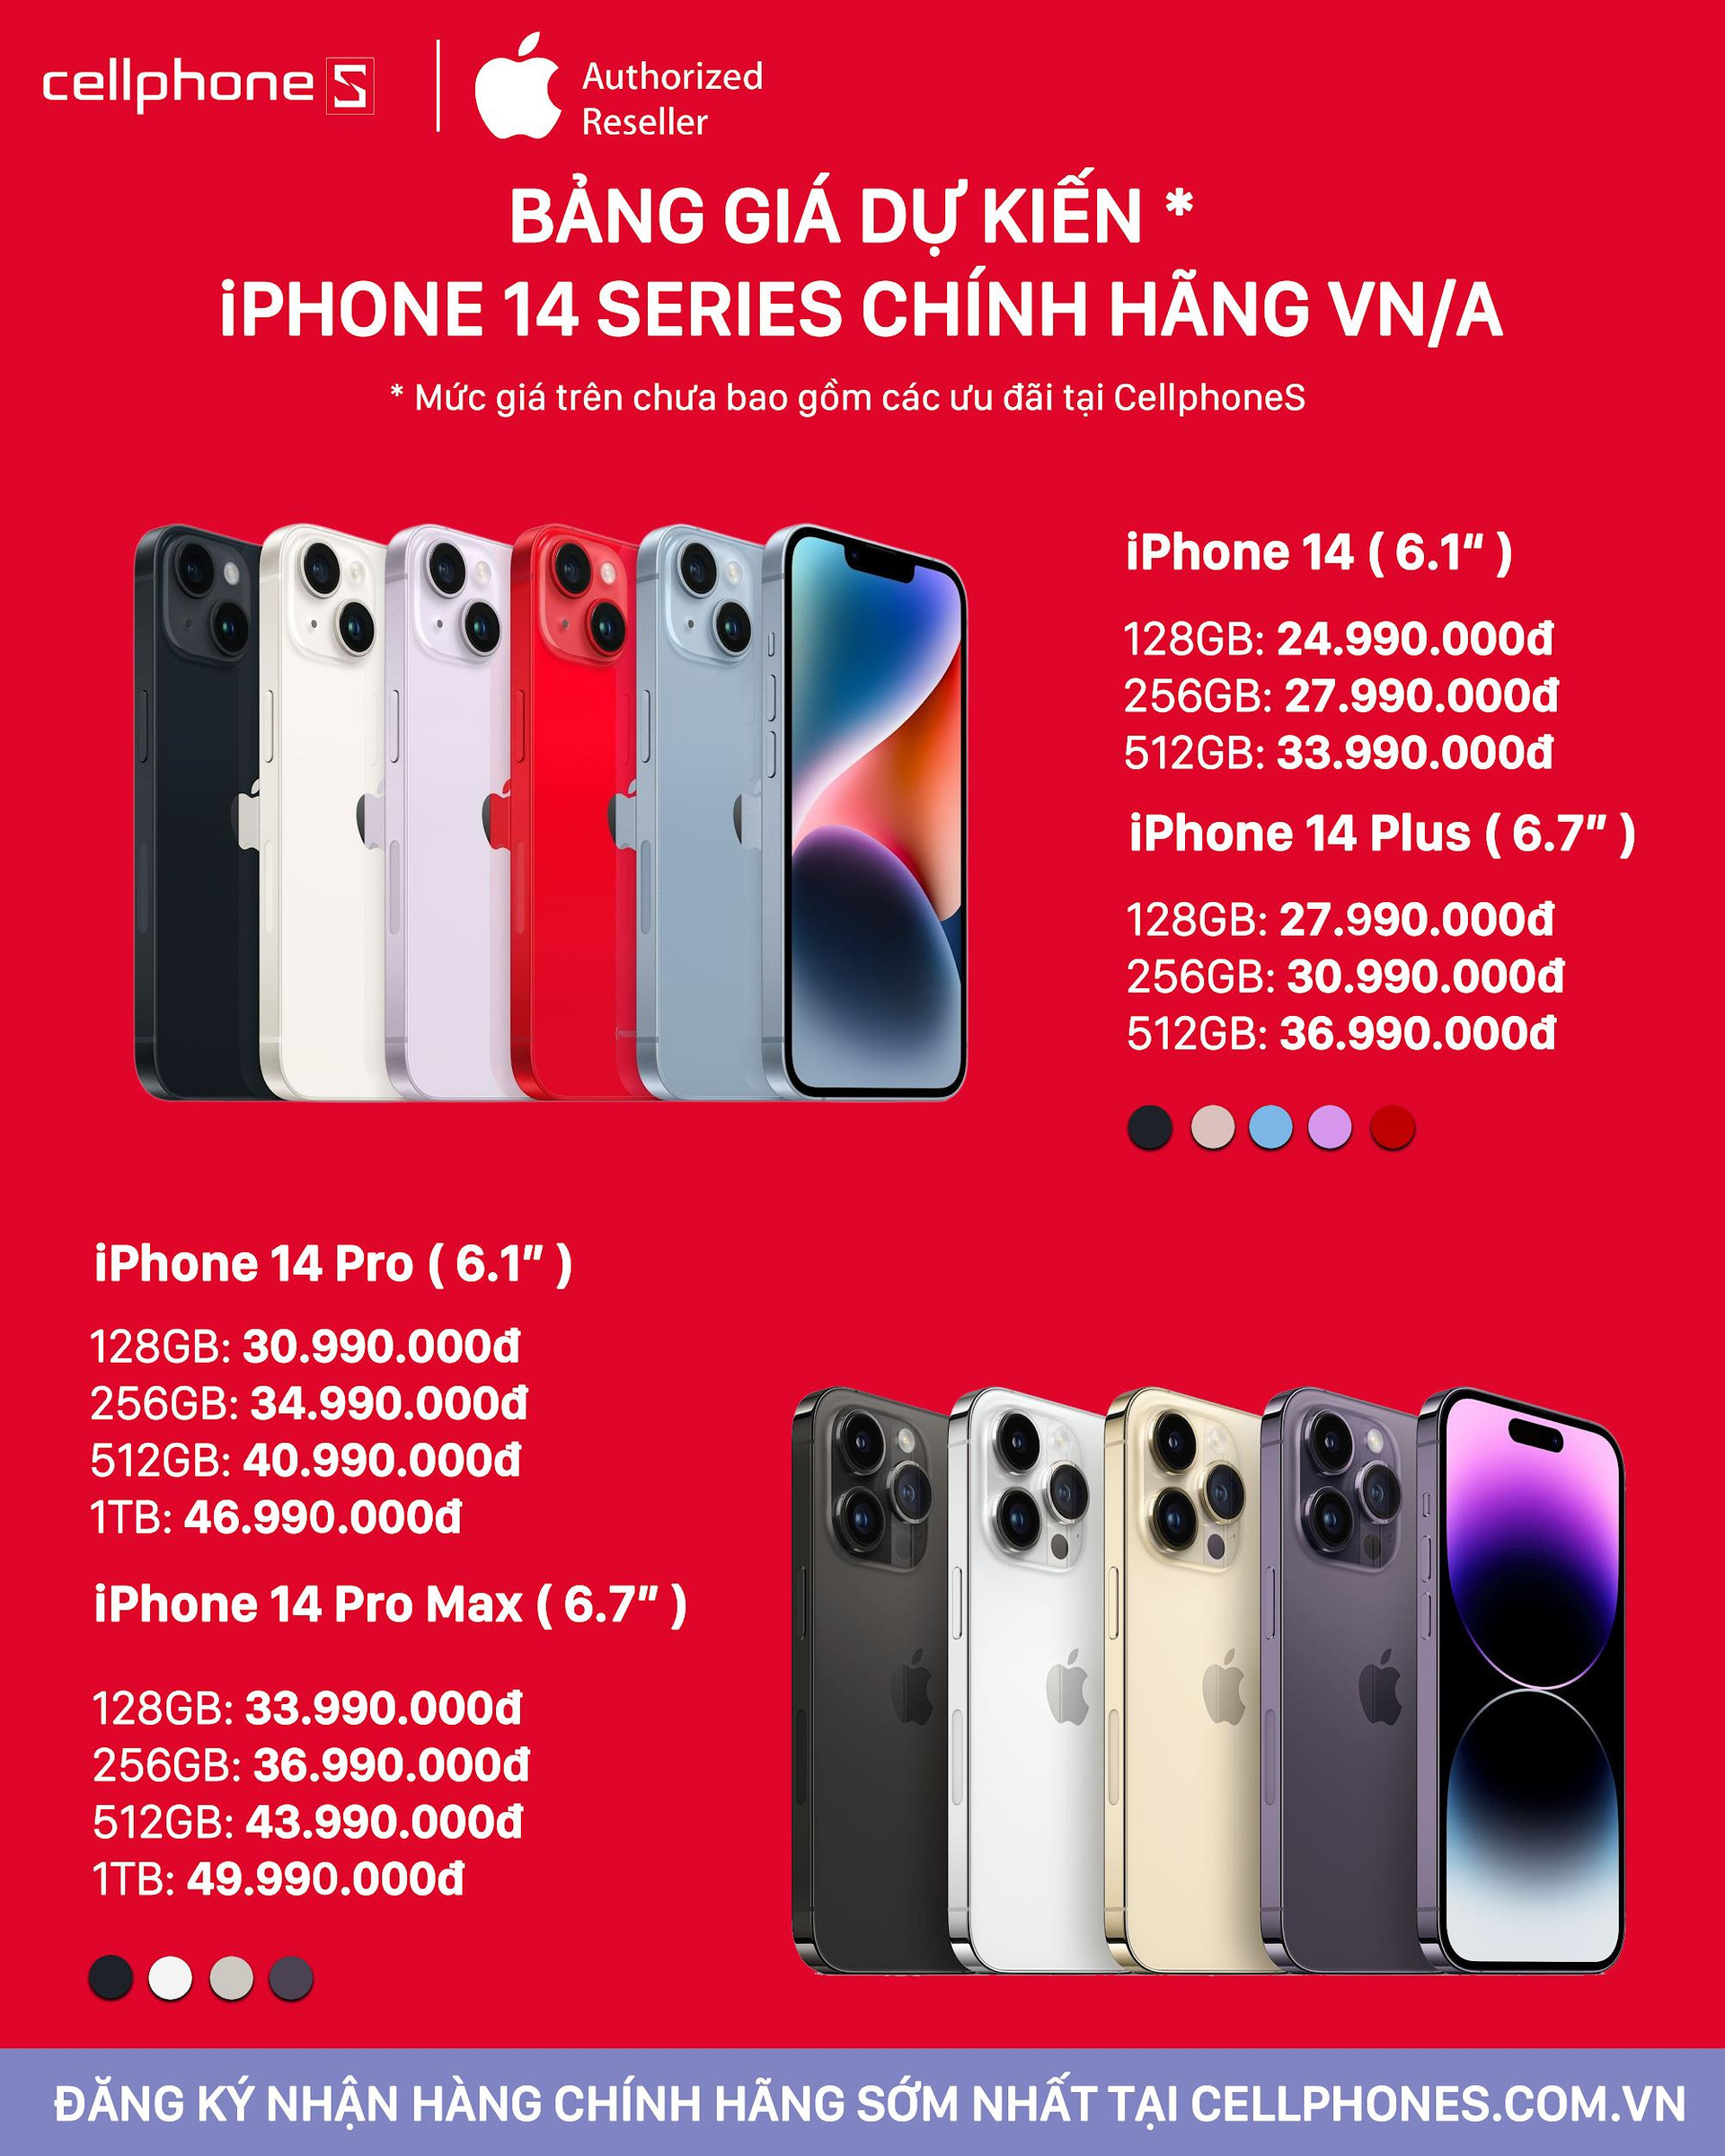 CellphoneS công bố thời gian đặt trước và mở bán iPhone 14 series chính hãng tại Việt Nam - Ảnh 1.